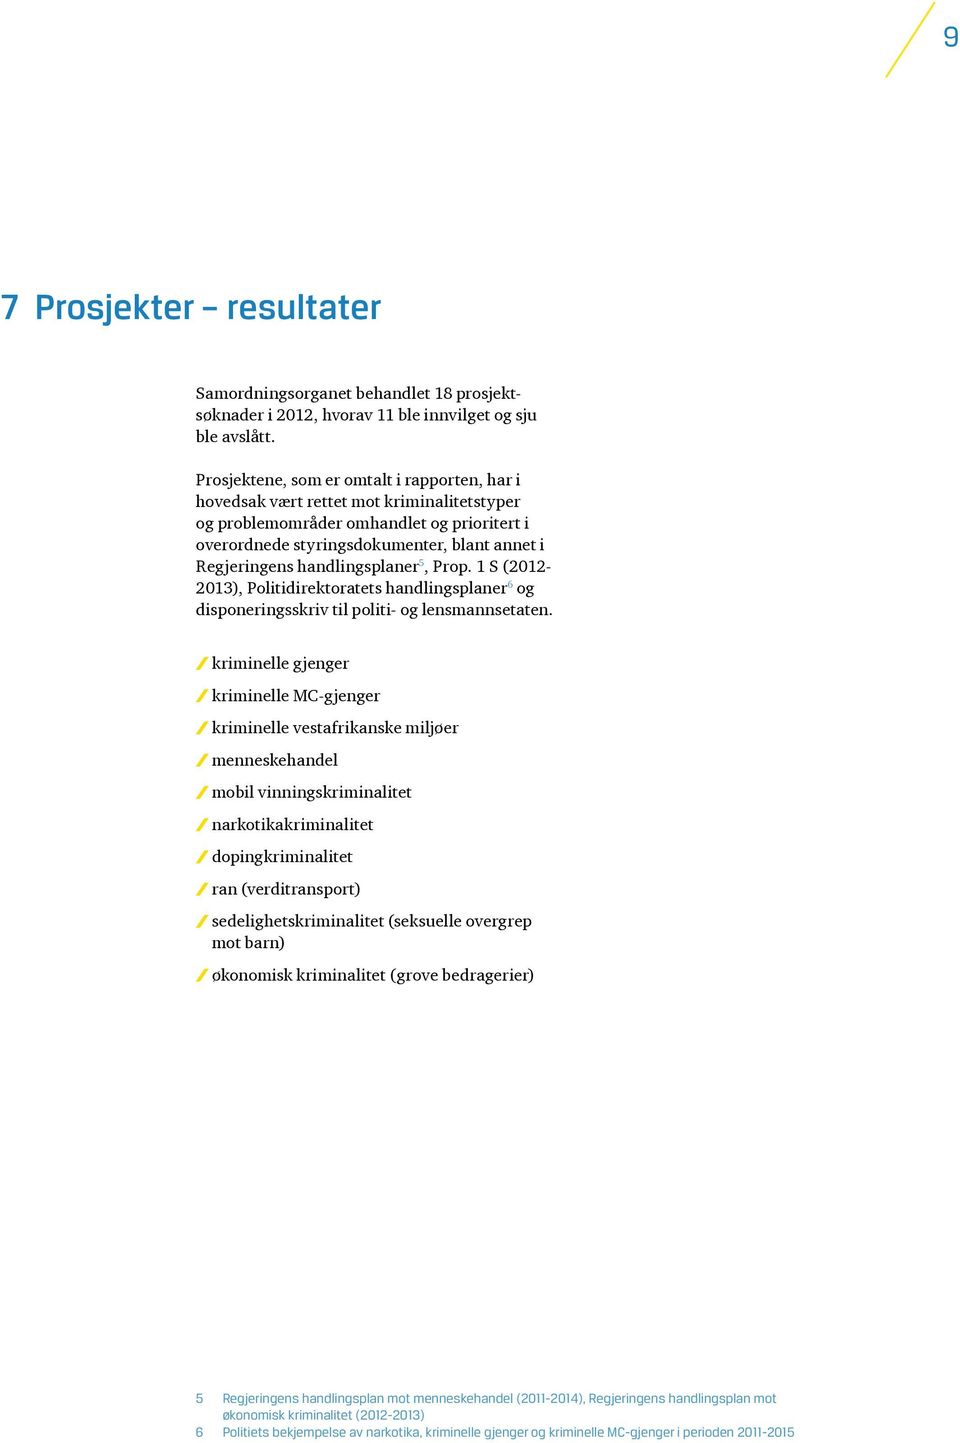 handlingsplaner 5, Prop. 1 S (2012-2013), Politidirektoratets handlingsplaner 6 og disponeringsskriv til politi- og lensmannsetaten.